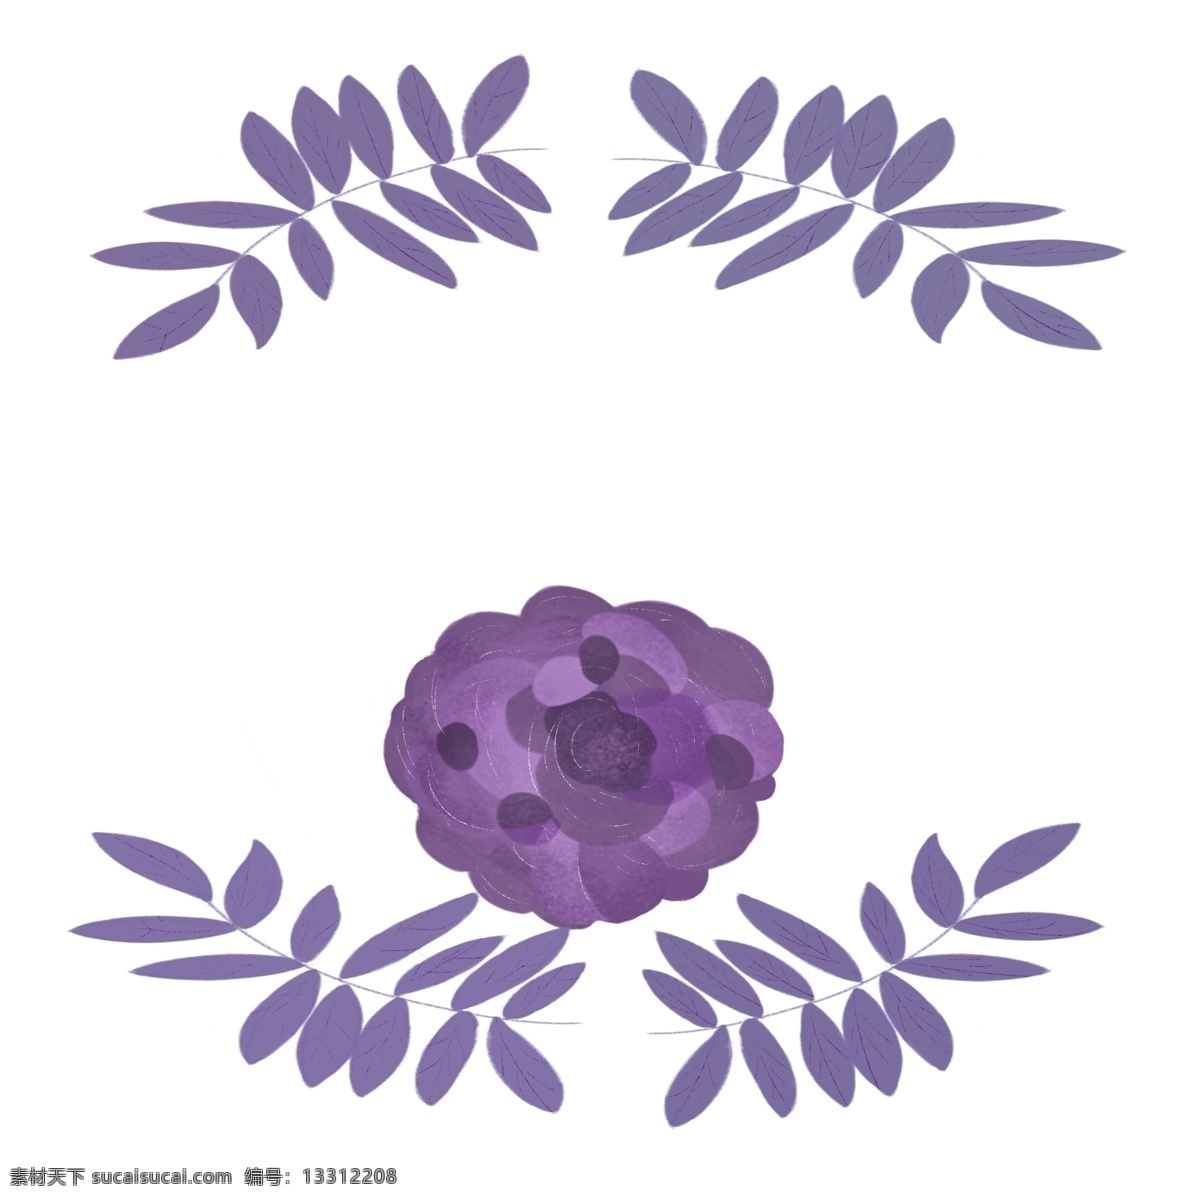 紫色 小花 边框 插画 紫色的边框 紫色的小花 紫色的叶子 婚礼边框 漂亮的边框 创意边框 立体边框